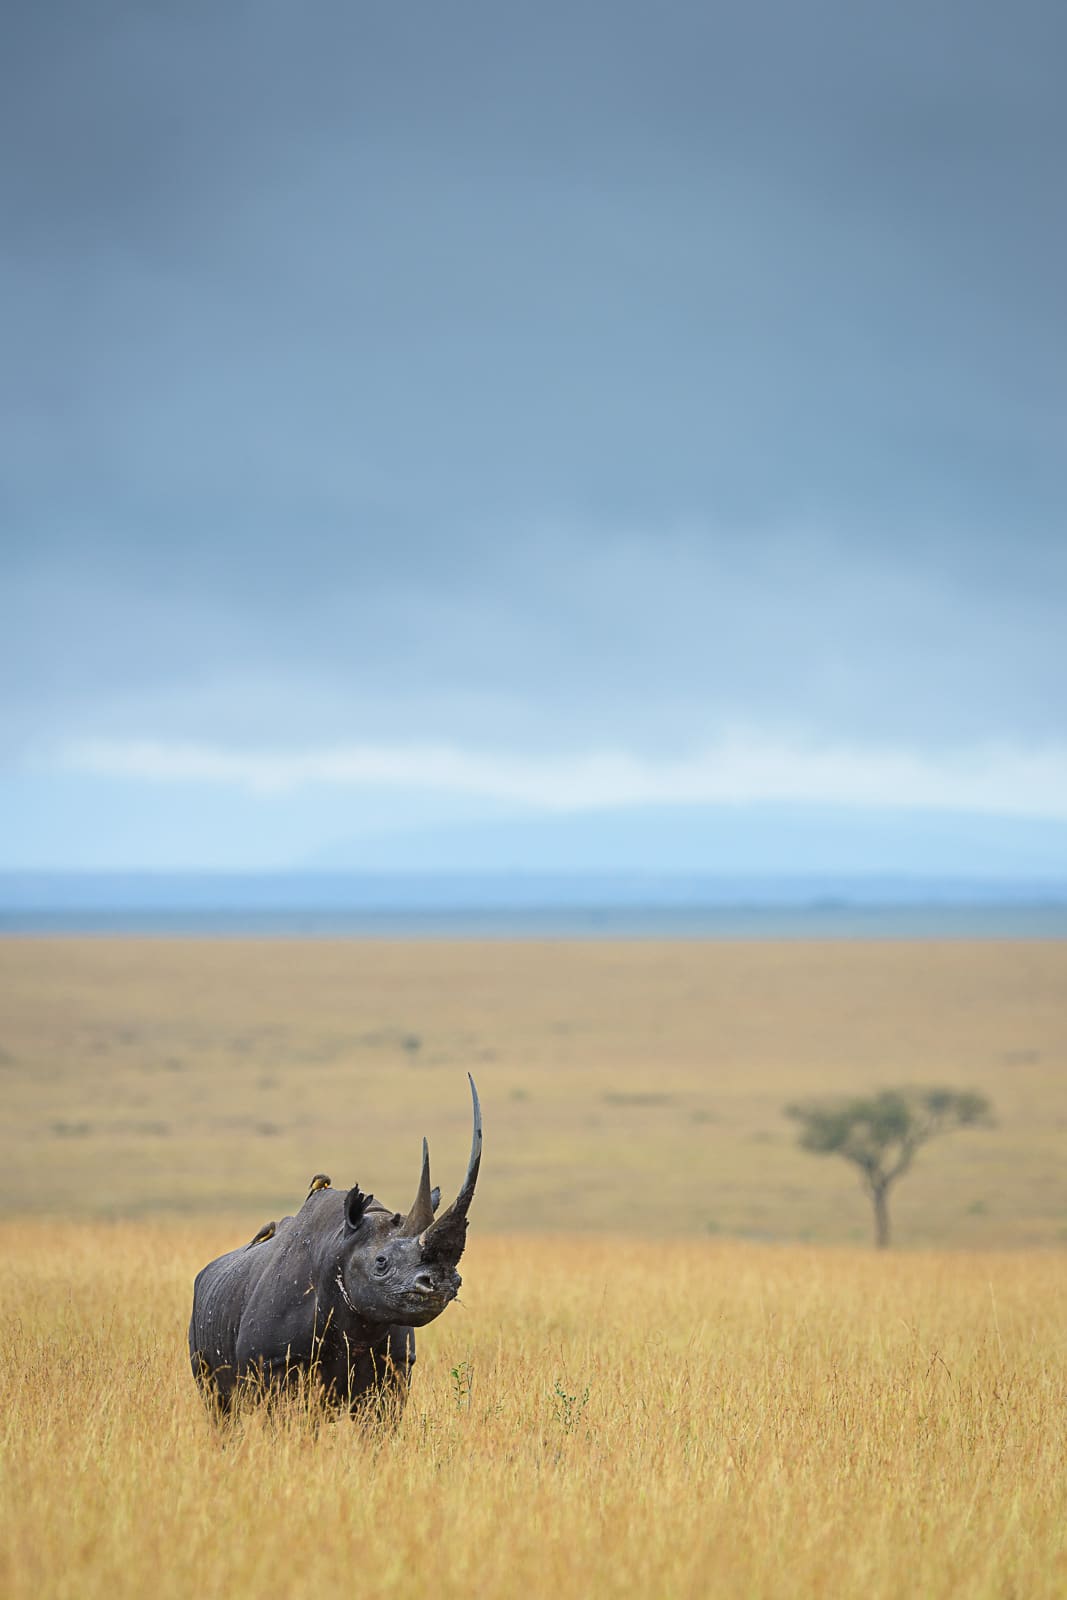 Rhino in Africa by David Lloyd